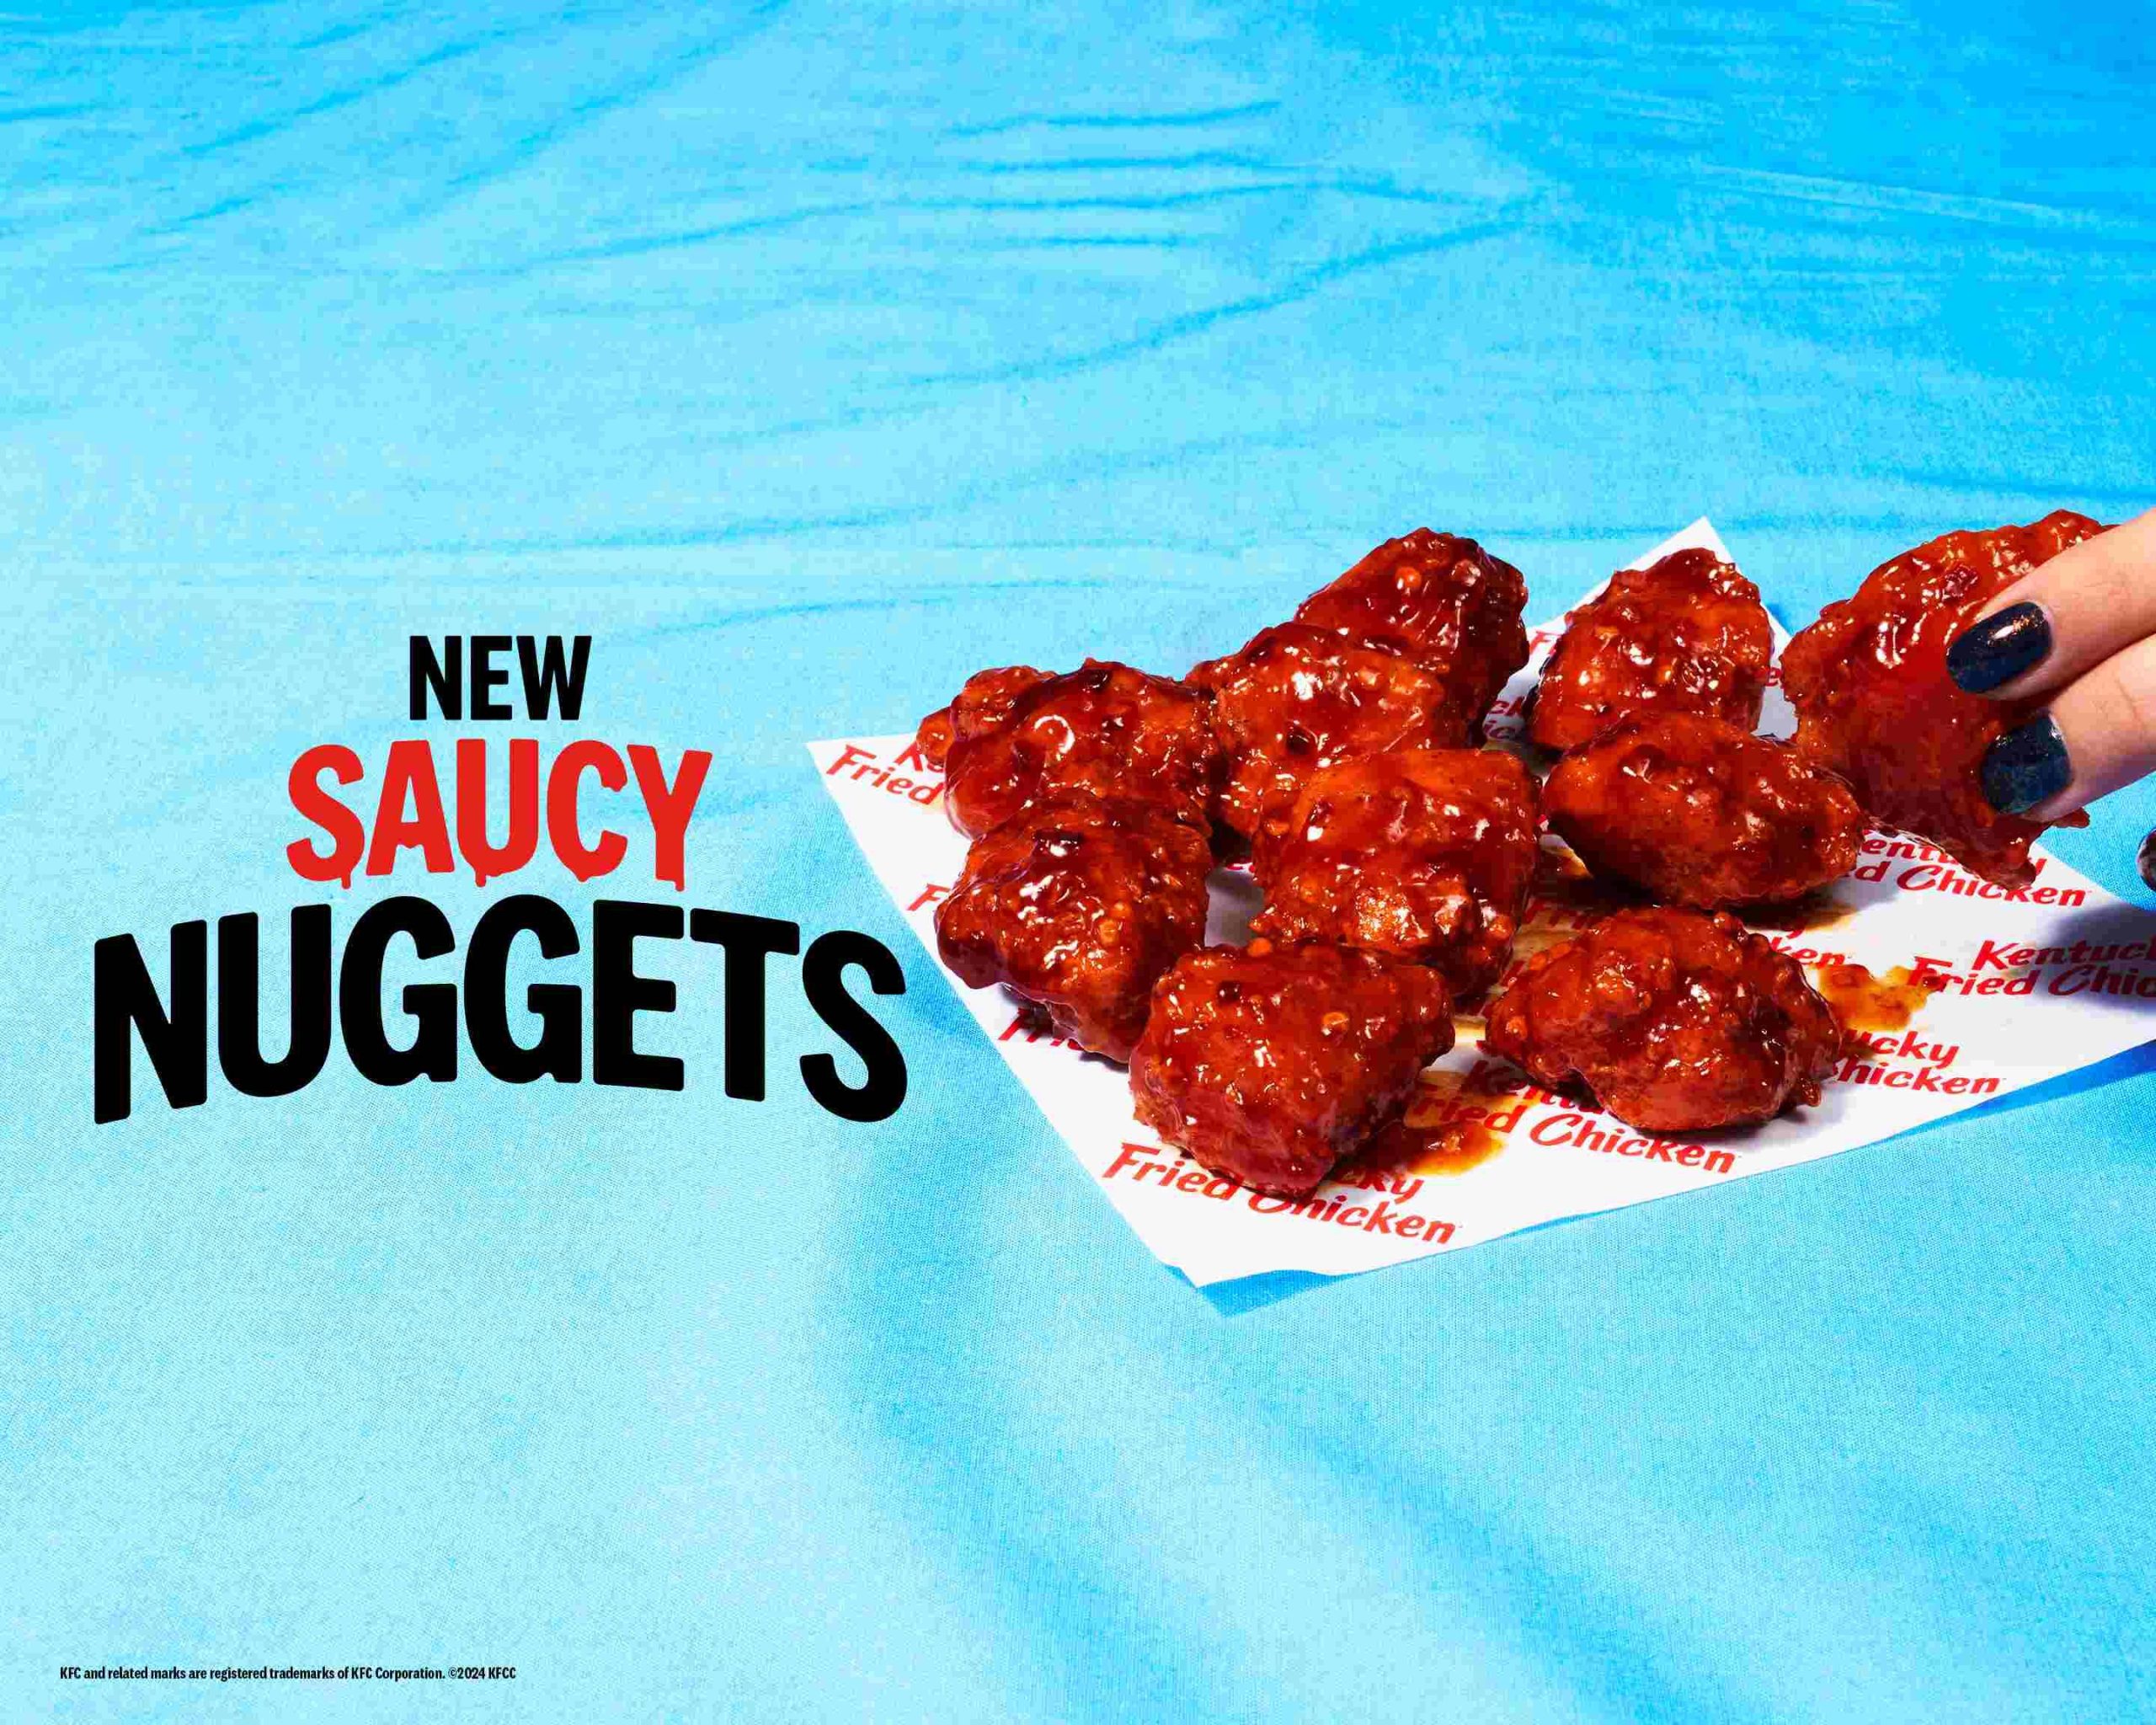 Τα νέα Saucy Nuggets της KFC ανεβάζουν τη γεύση στο επόμενο επίπεδο